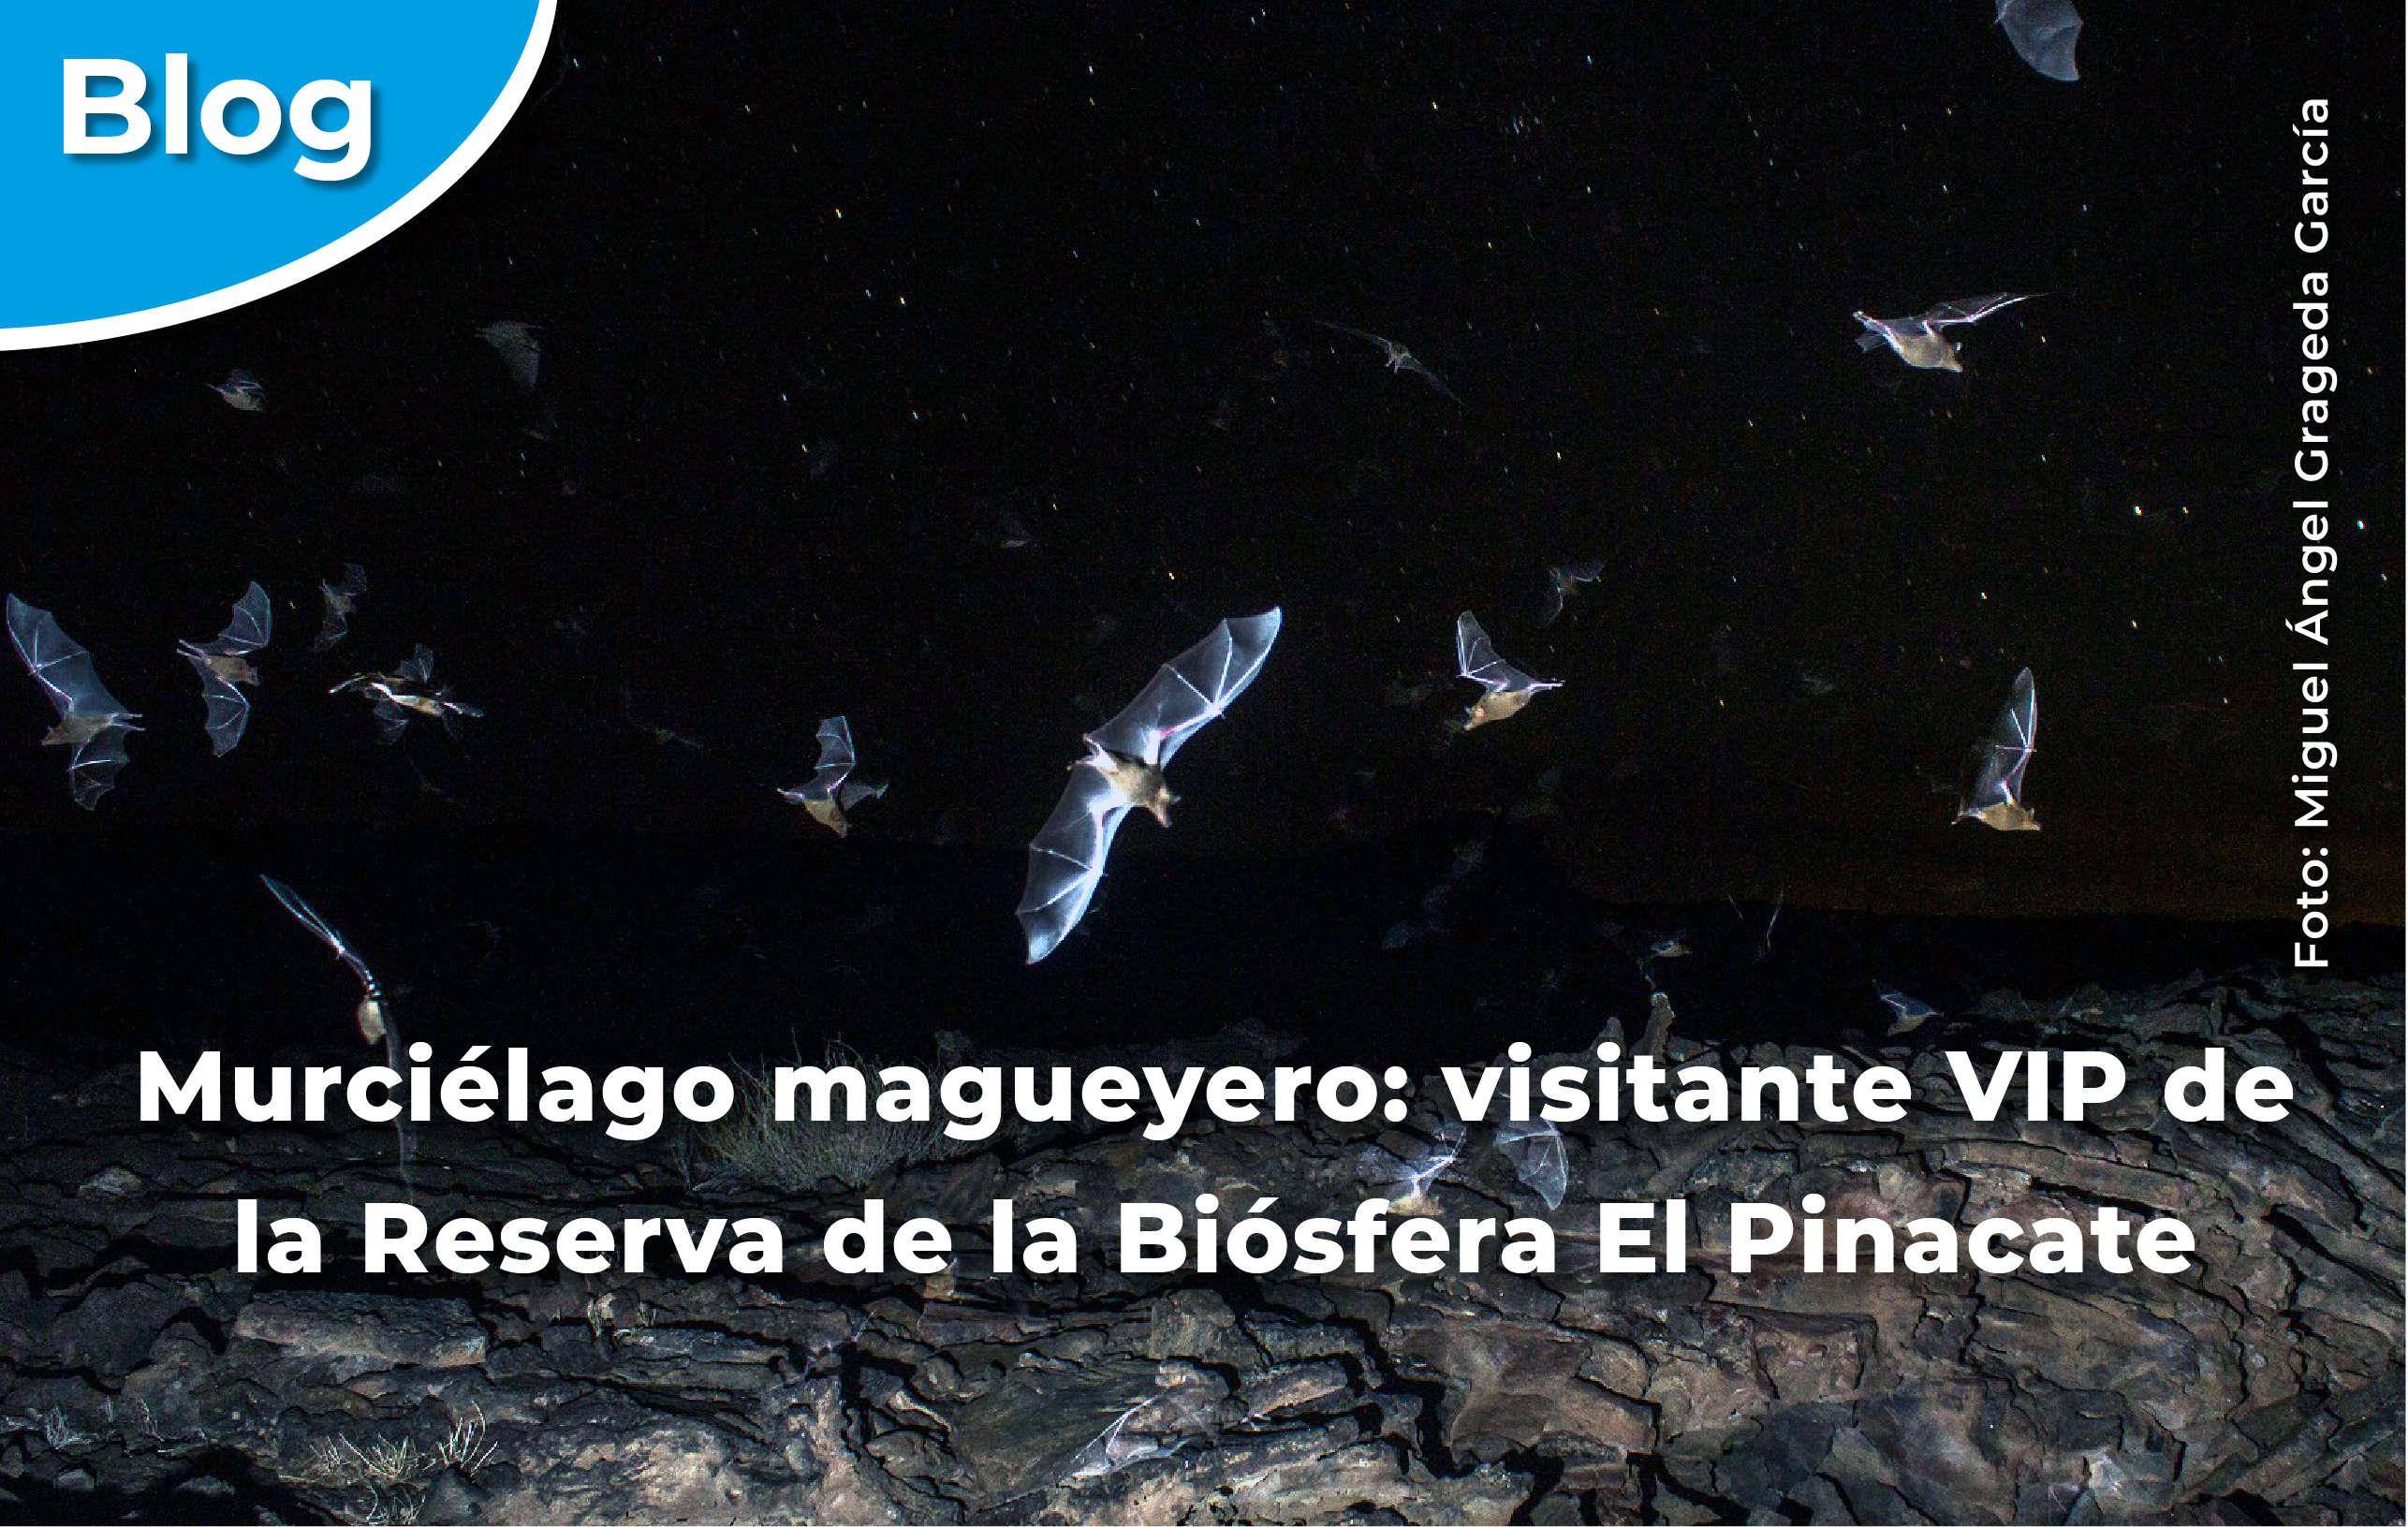 Murciélagos magueyeros volando en la Reserva de la Biósfera El Pinacate y Gran Desierto de Altar.